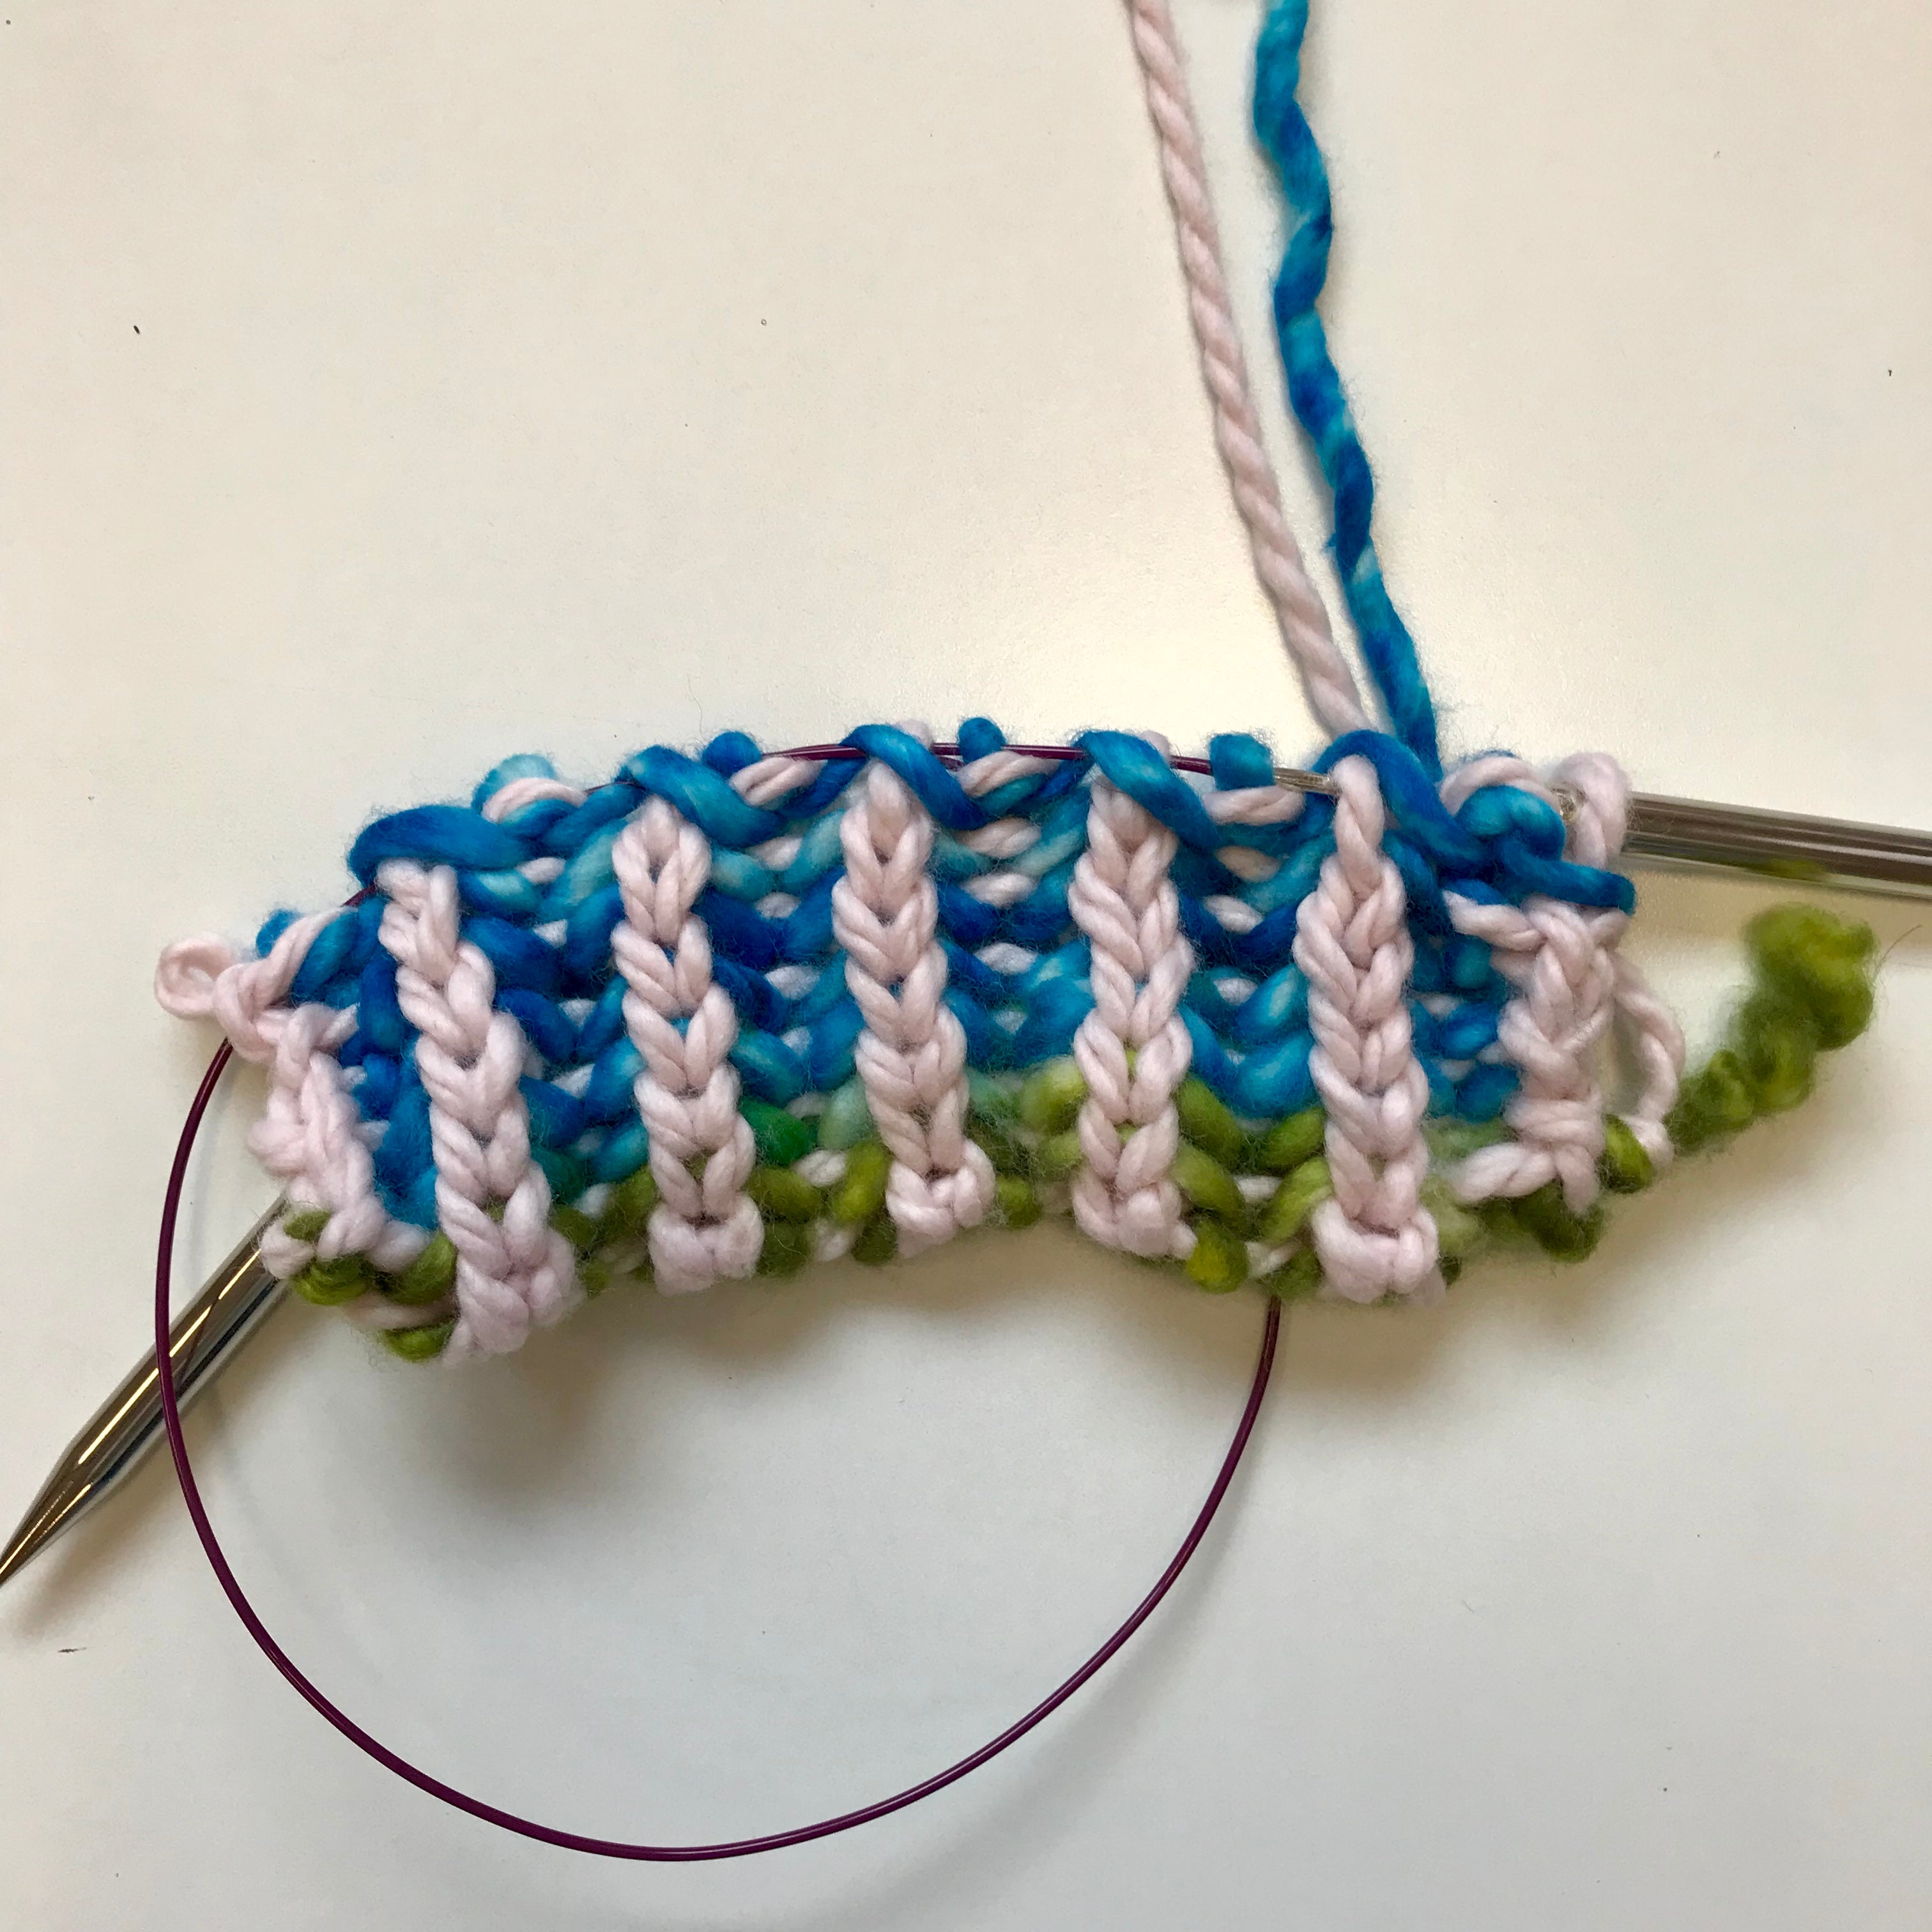 Learn to Knit: 2 Colour Flat Brioche